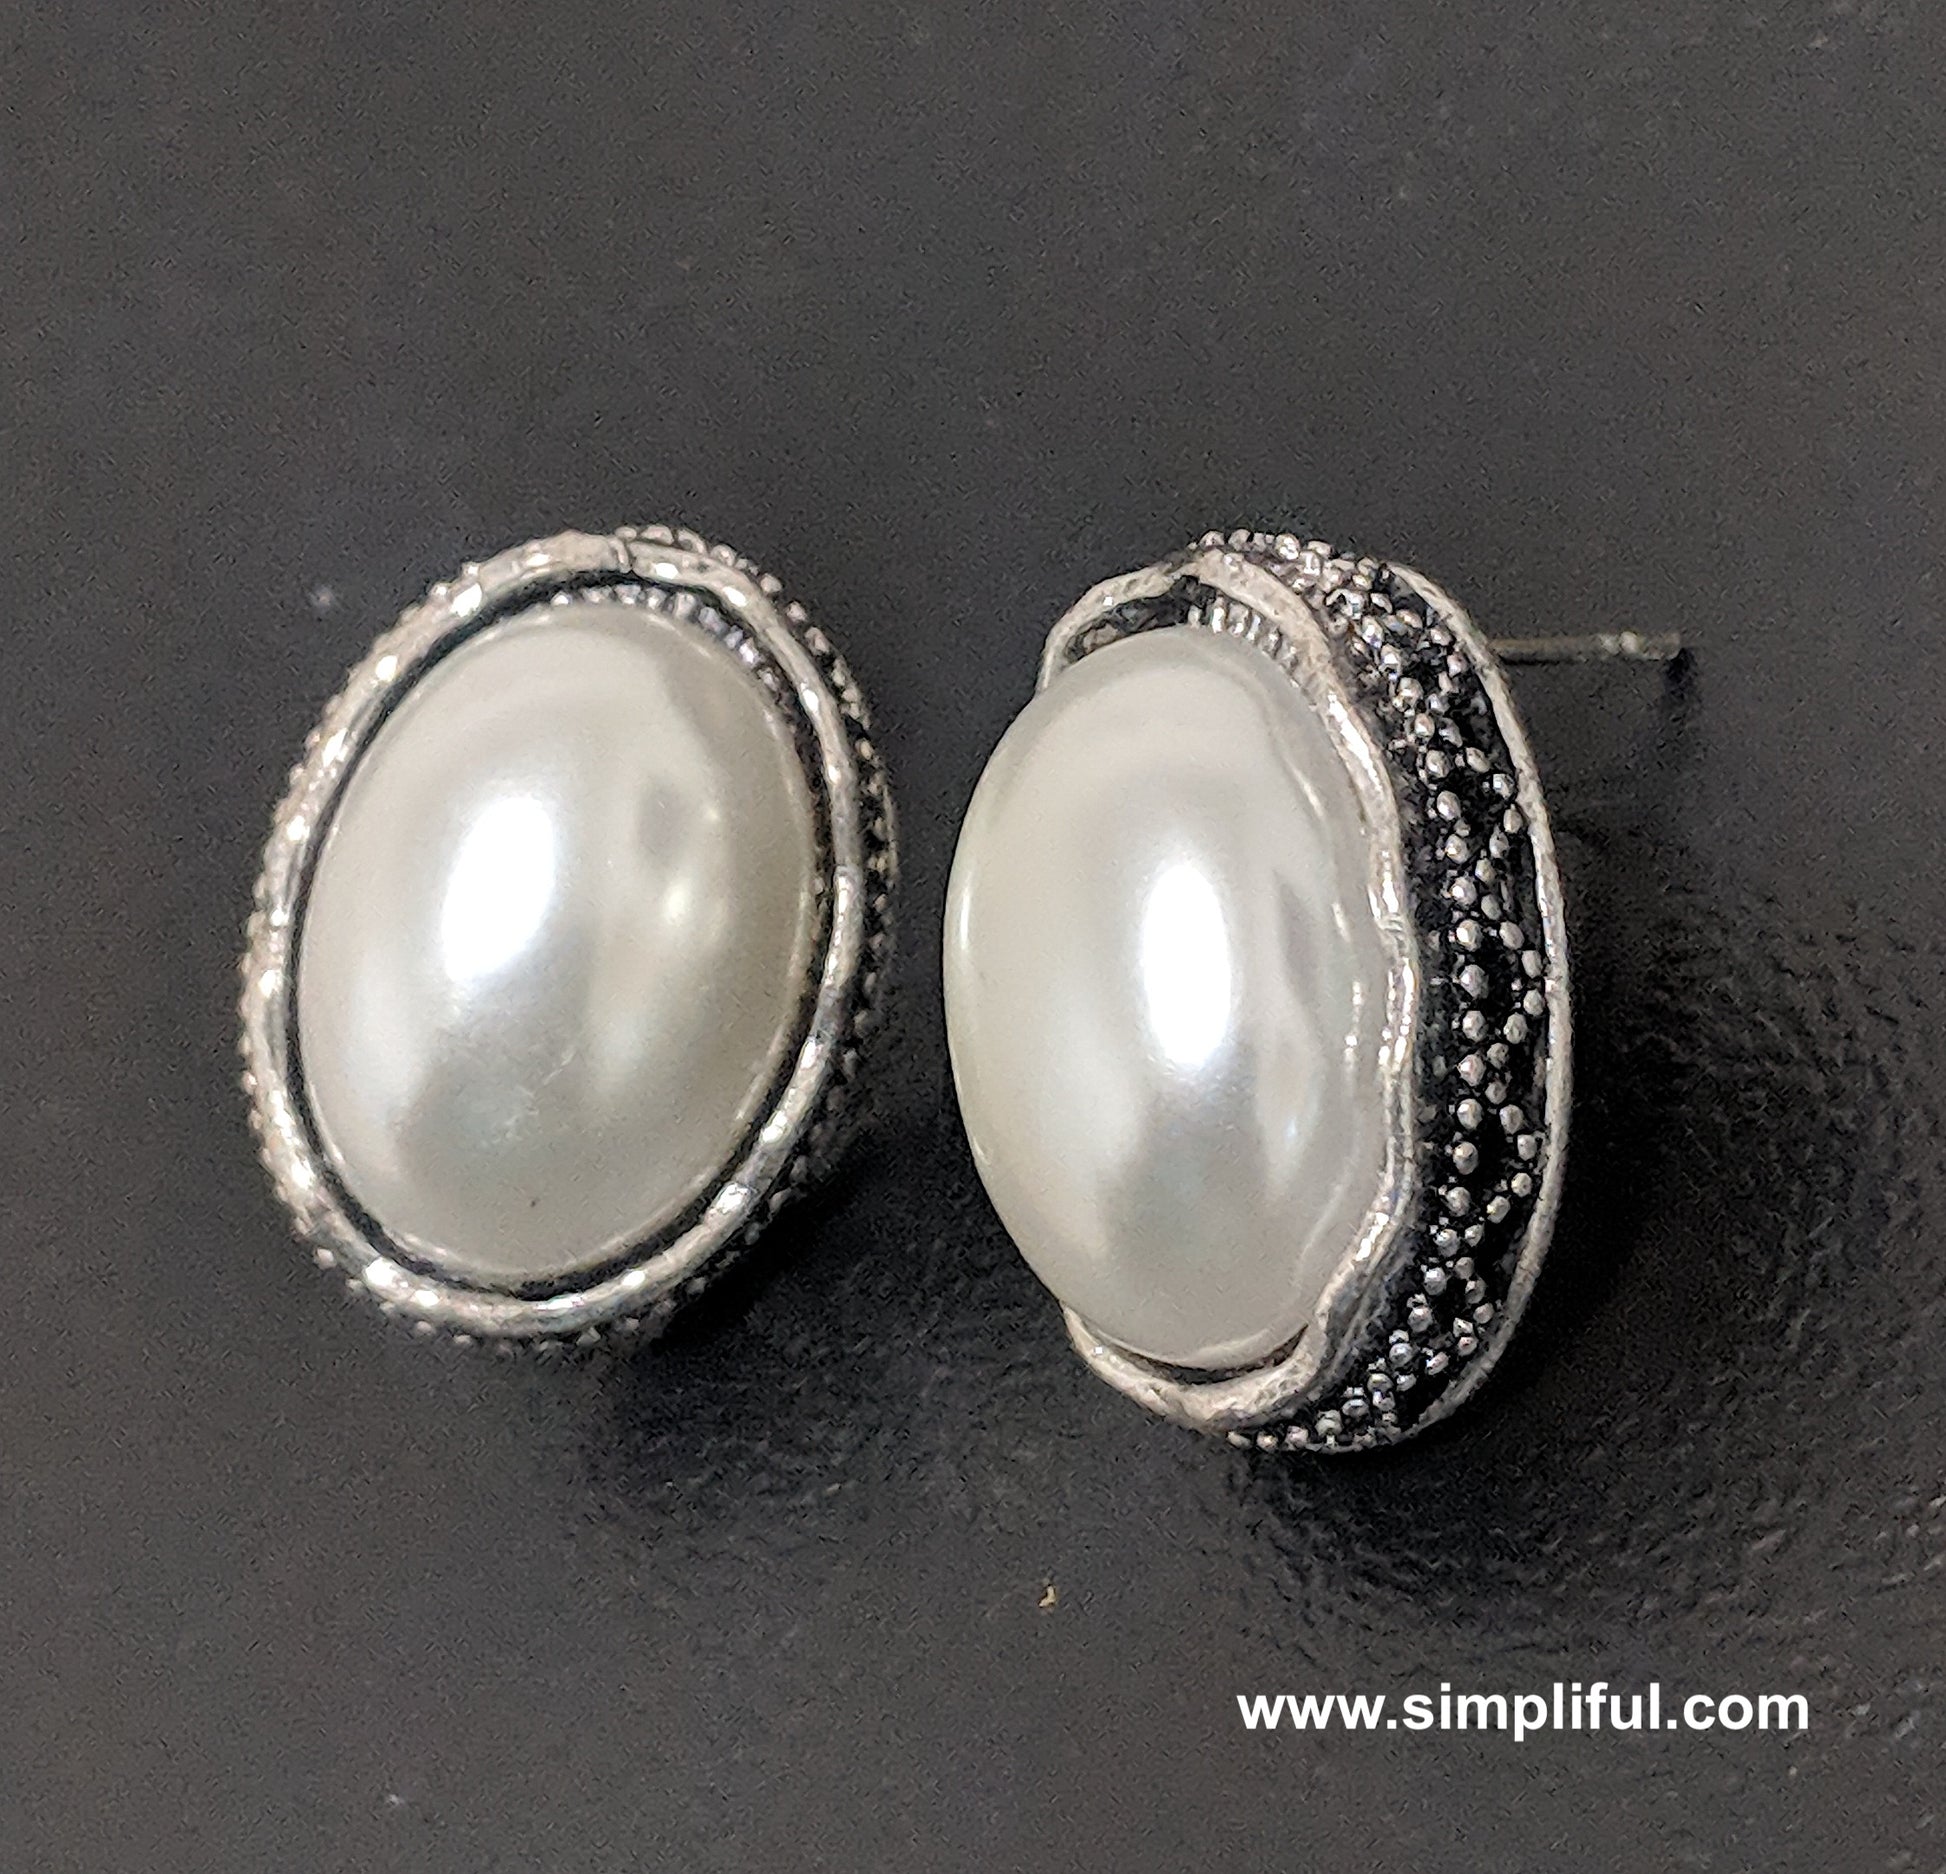 Oval faux pearl Stud Earring - Simpliful